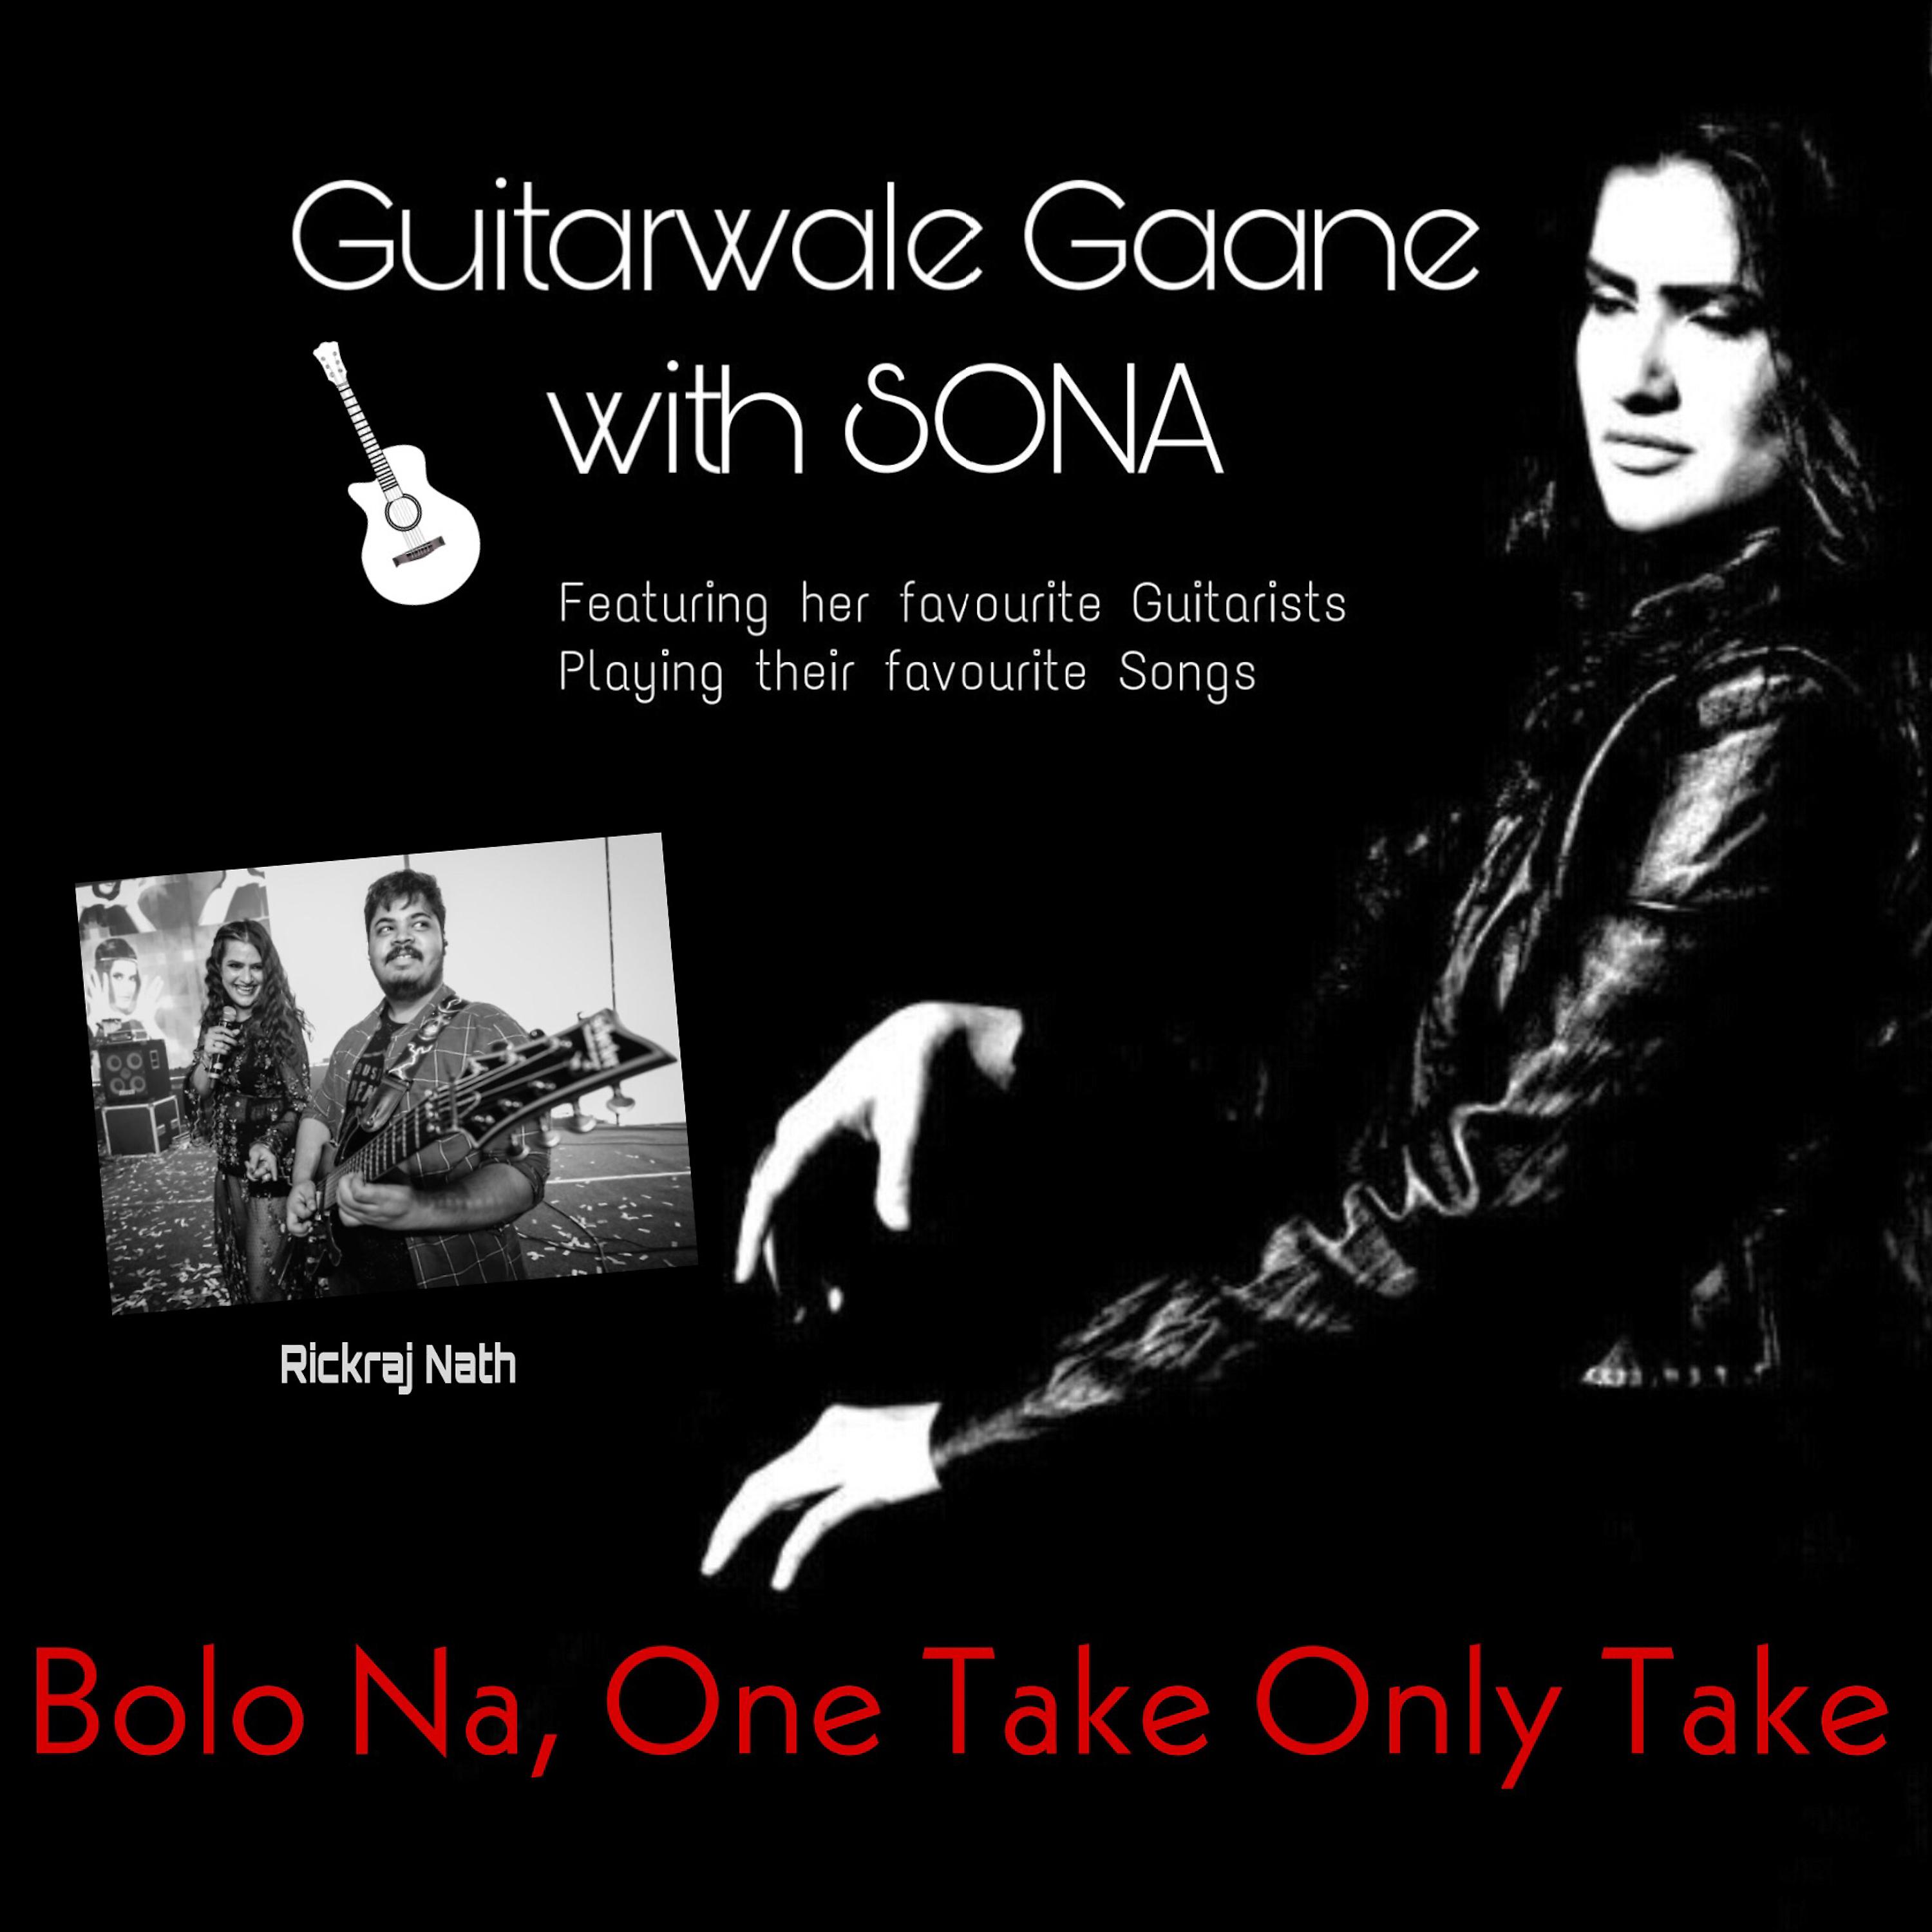 Постер альбома Bolo Na: Guitarwale Gaane with Sona